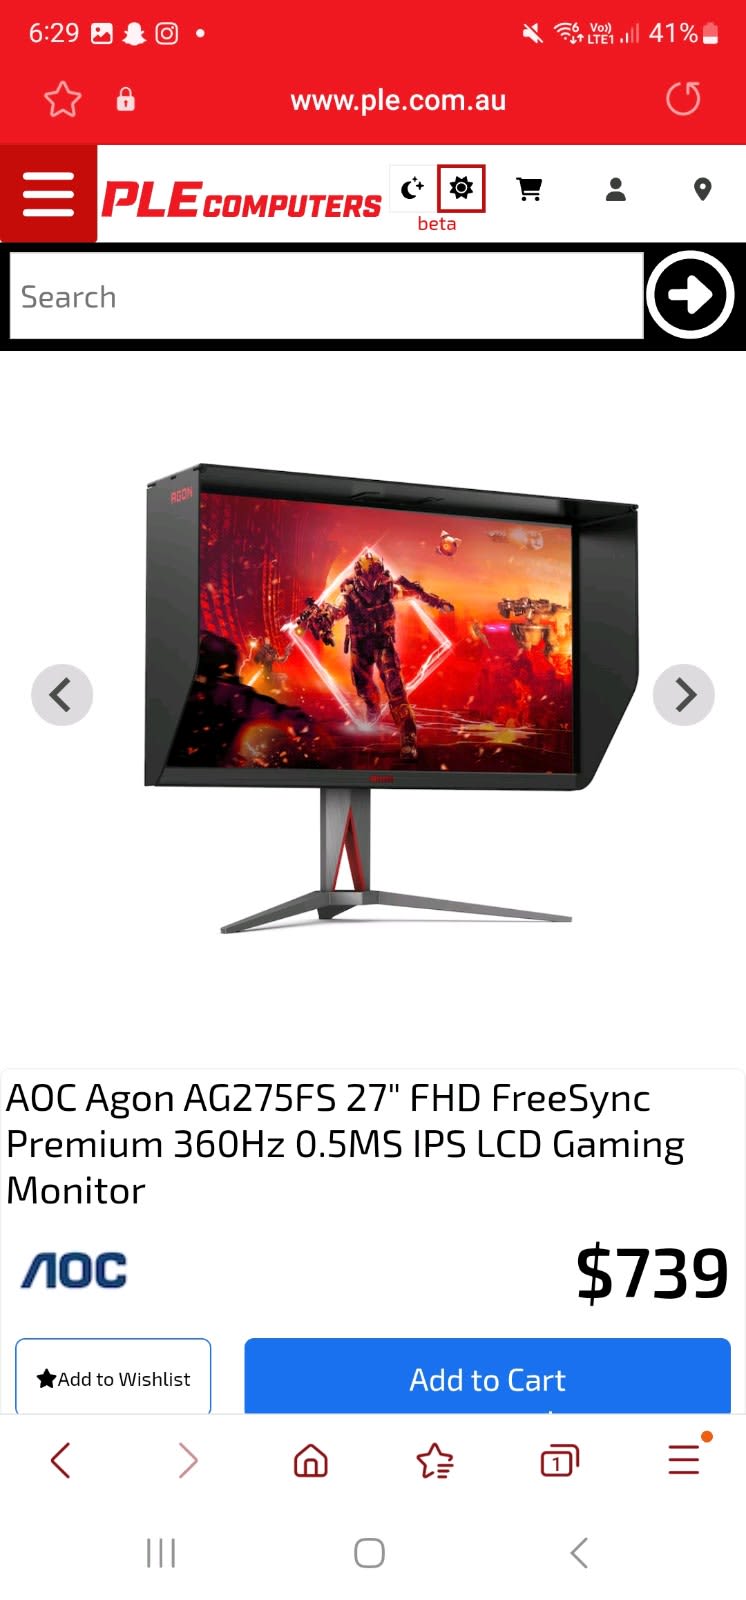 27 AOC AG275FS 360Hz FHD 0.5ms FreeSync IPS Gaming Monitor